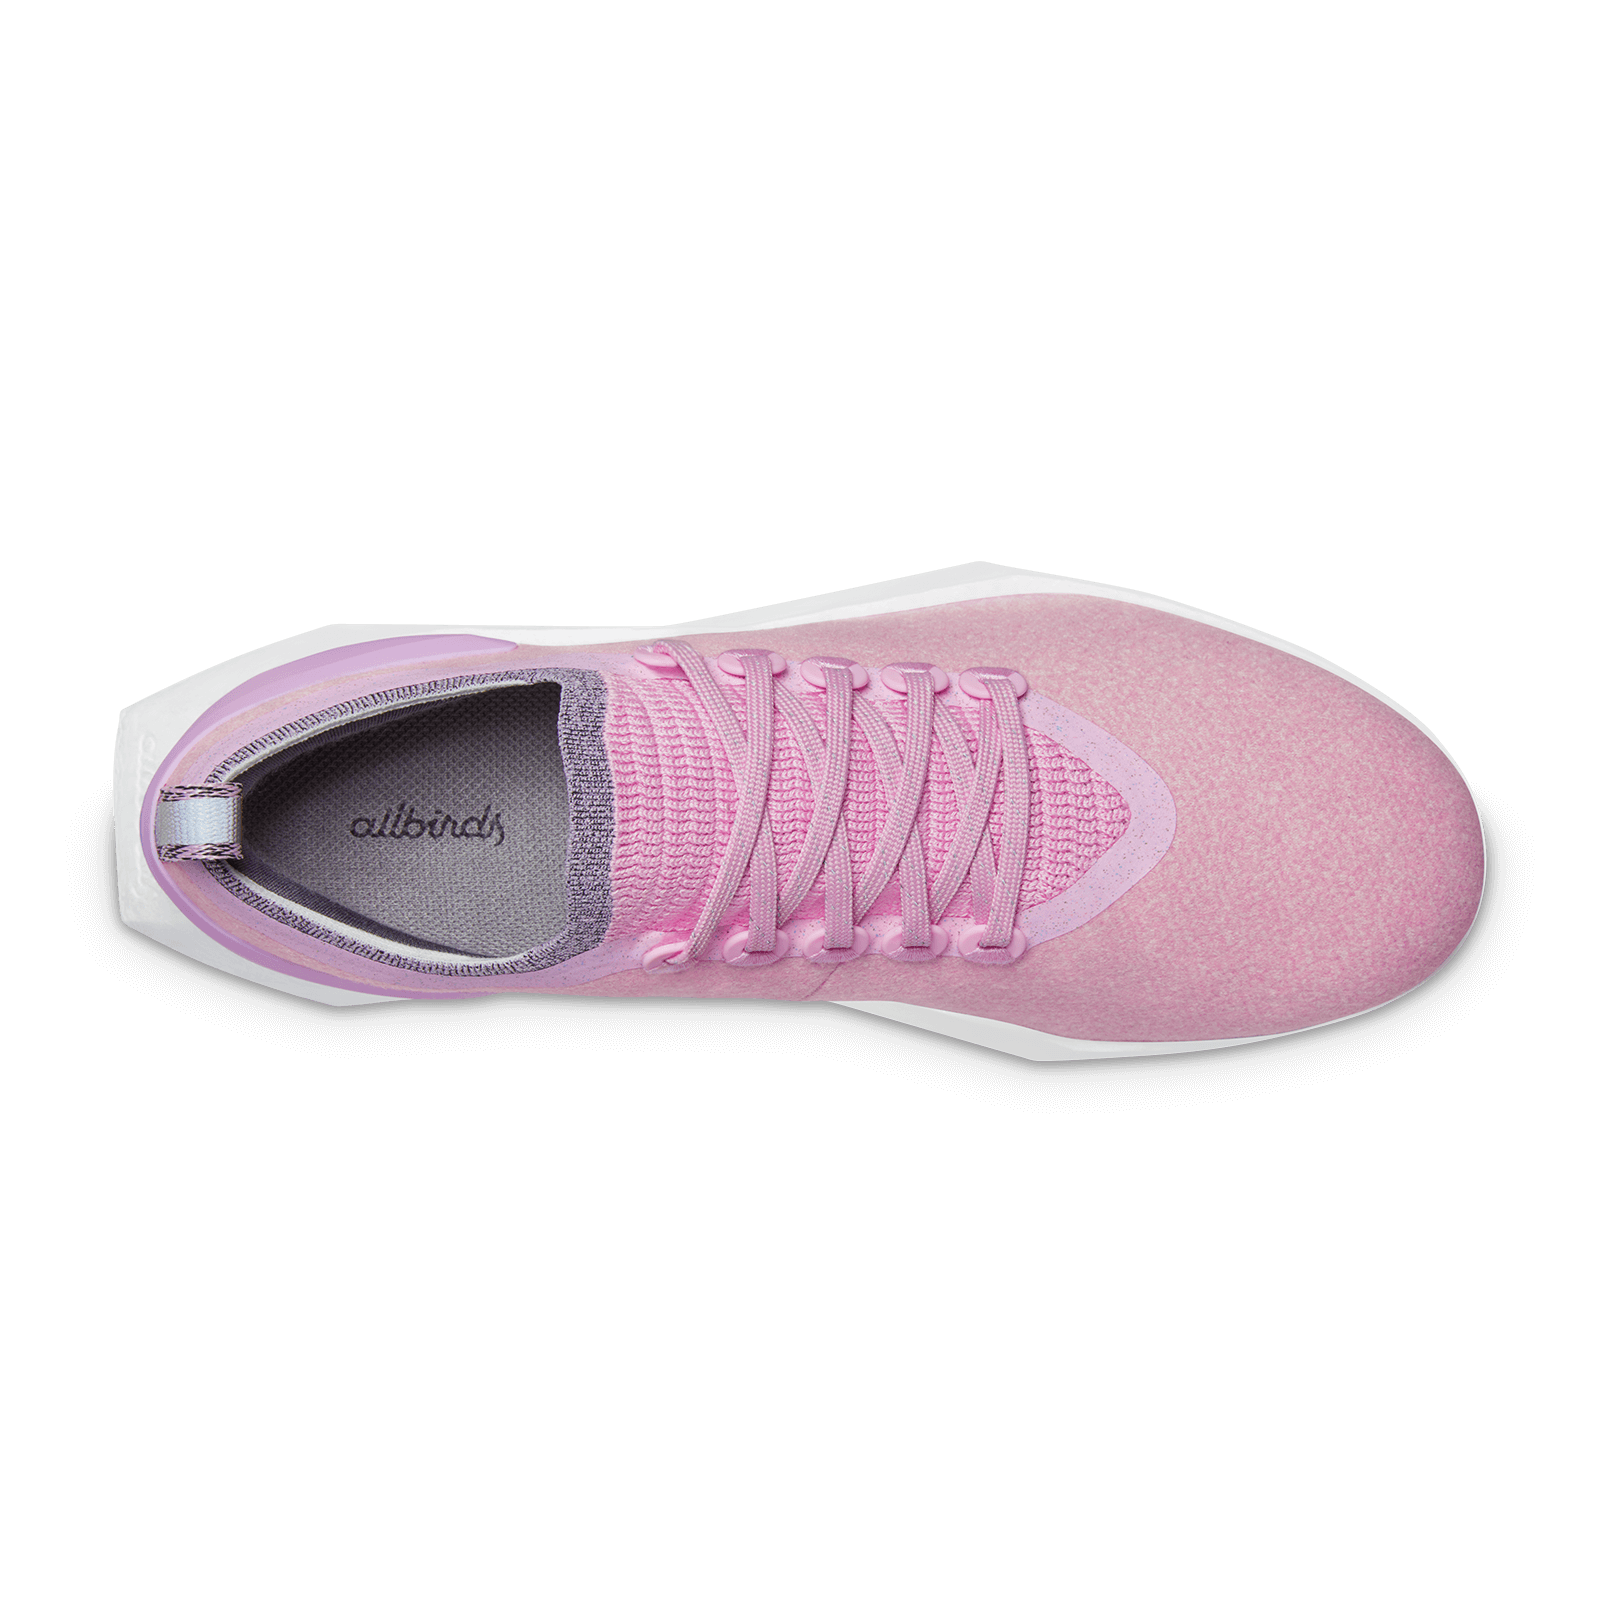 Women's Wool Flyer Mizzles - Buoyant Pink (Blizzard Sole)